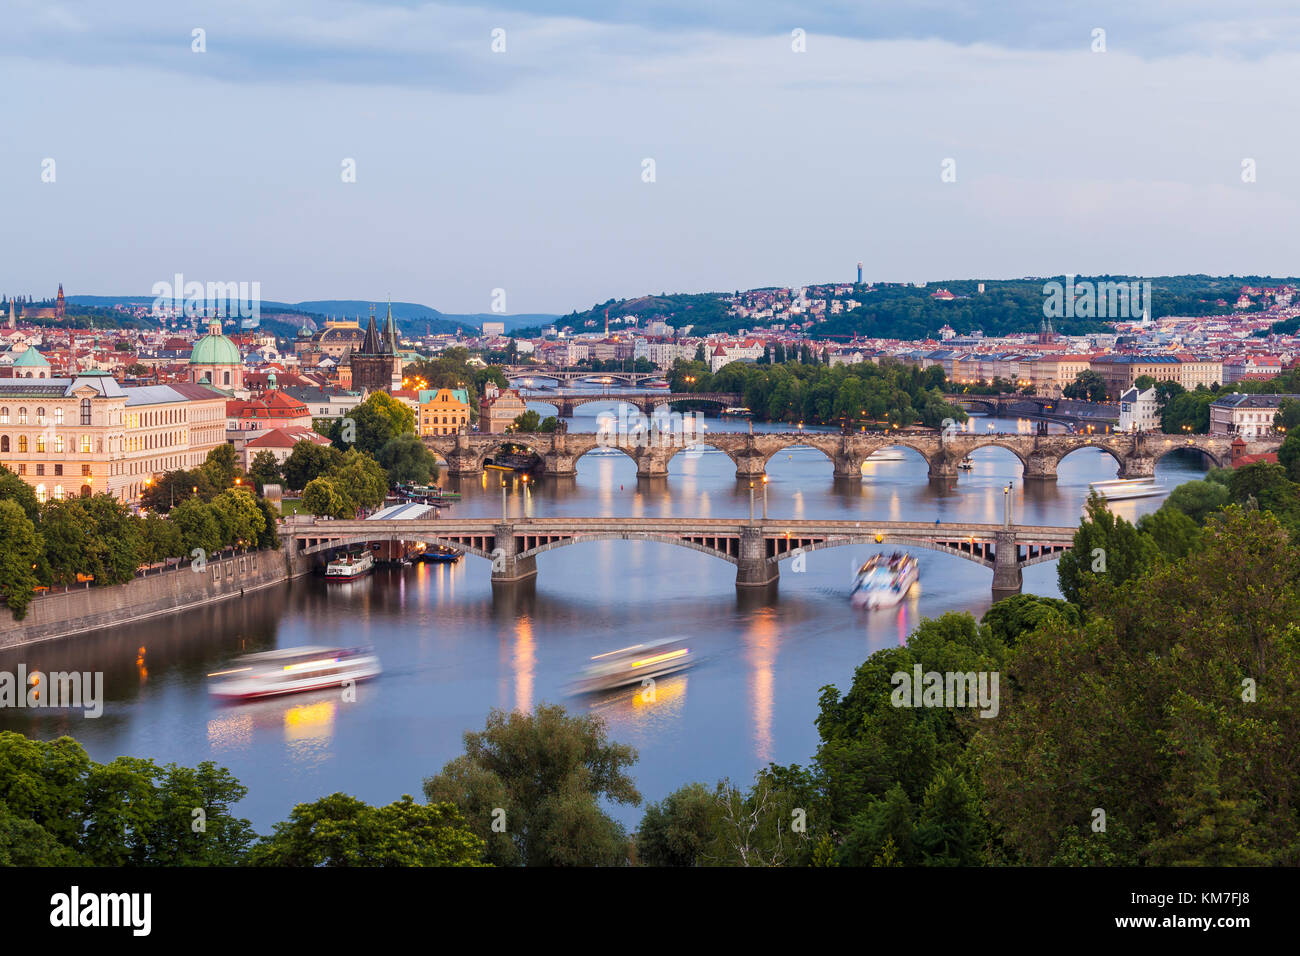 Tschechien, Prag, Moldau, Stadtansicht, Blick auf die Altstadt und die Kleinseite, Karlsbrücke, Brücken, Ausflugsboote, Schiffe Stock Photo